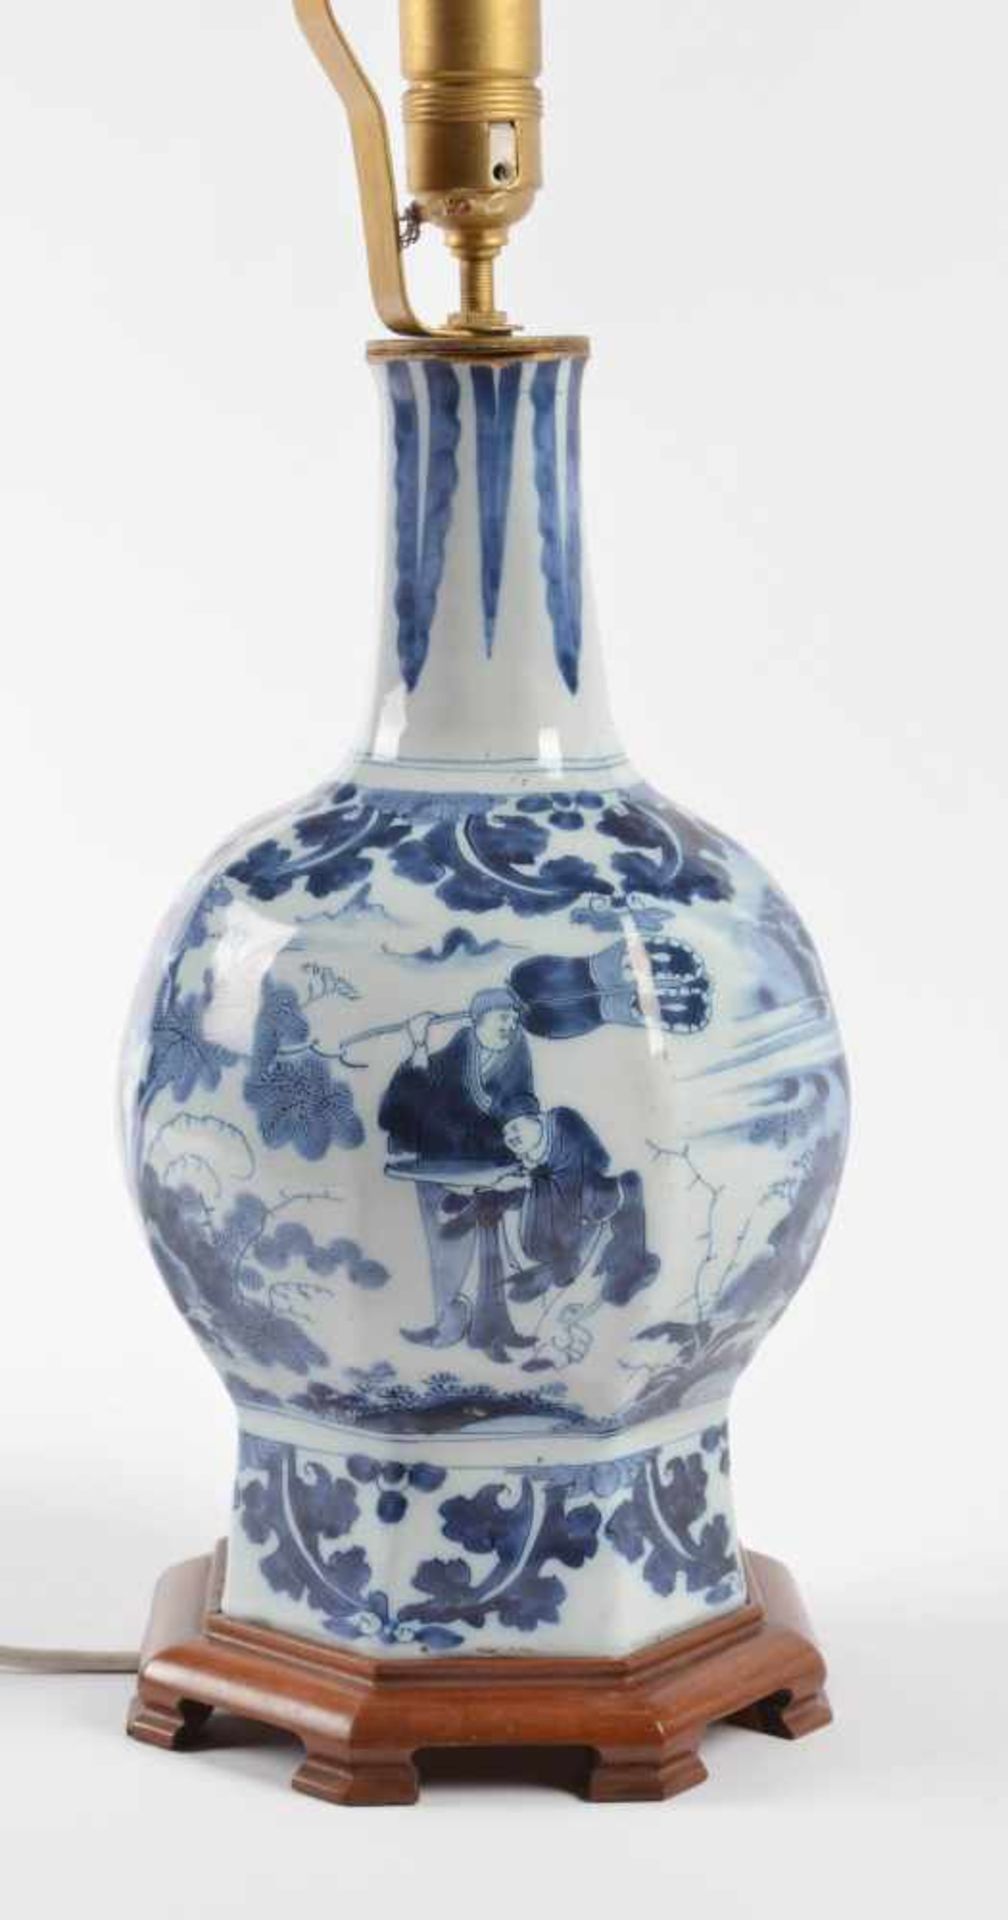 Lampe Delft 17. Jhd.blau und weiß Malerei mit chinesischem Dekor, ehemals Vase umgebaut zu einer - Image 3 of 4